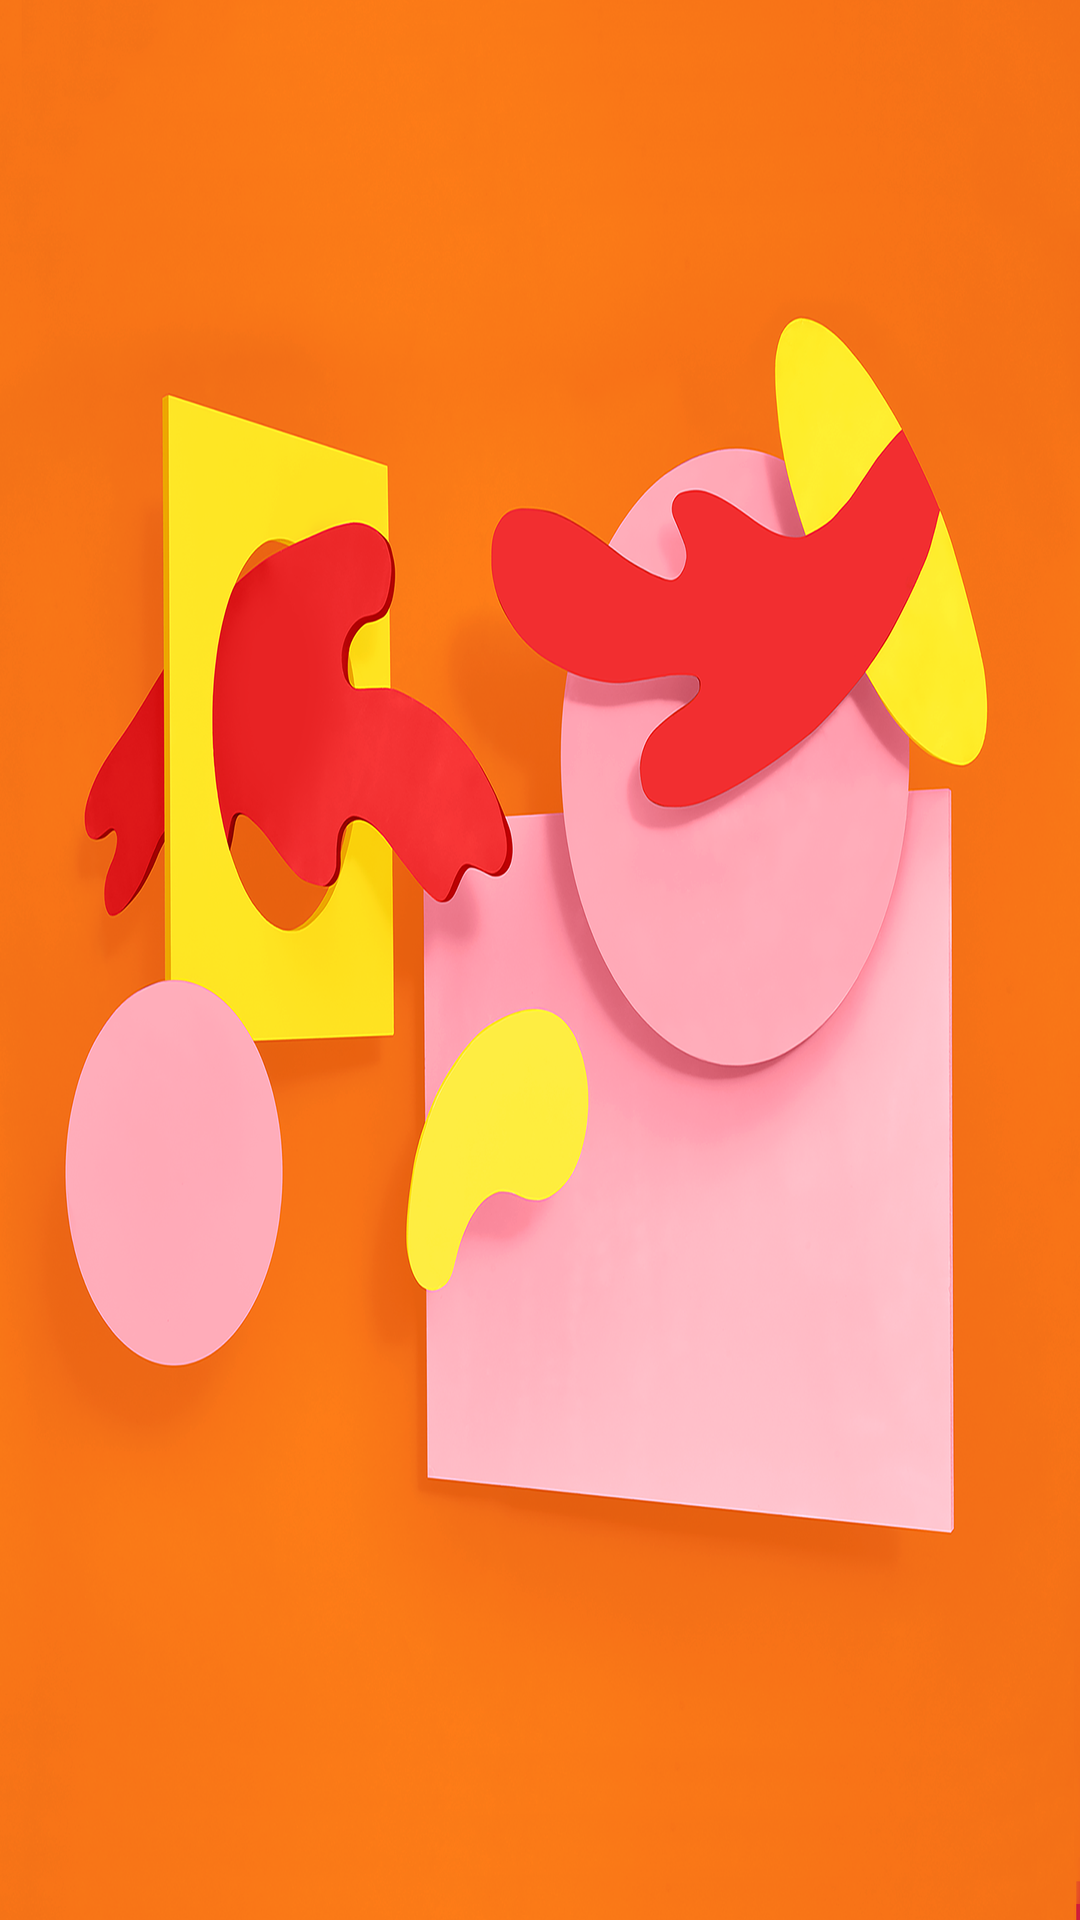 fonds d'écran android officiels,rose,jaune,orange,papier de construction,illustration